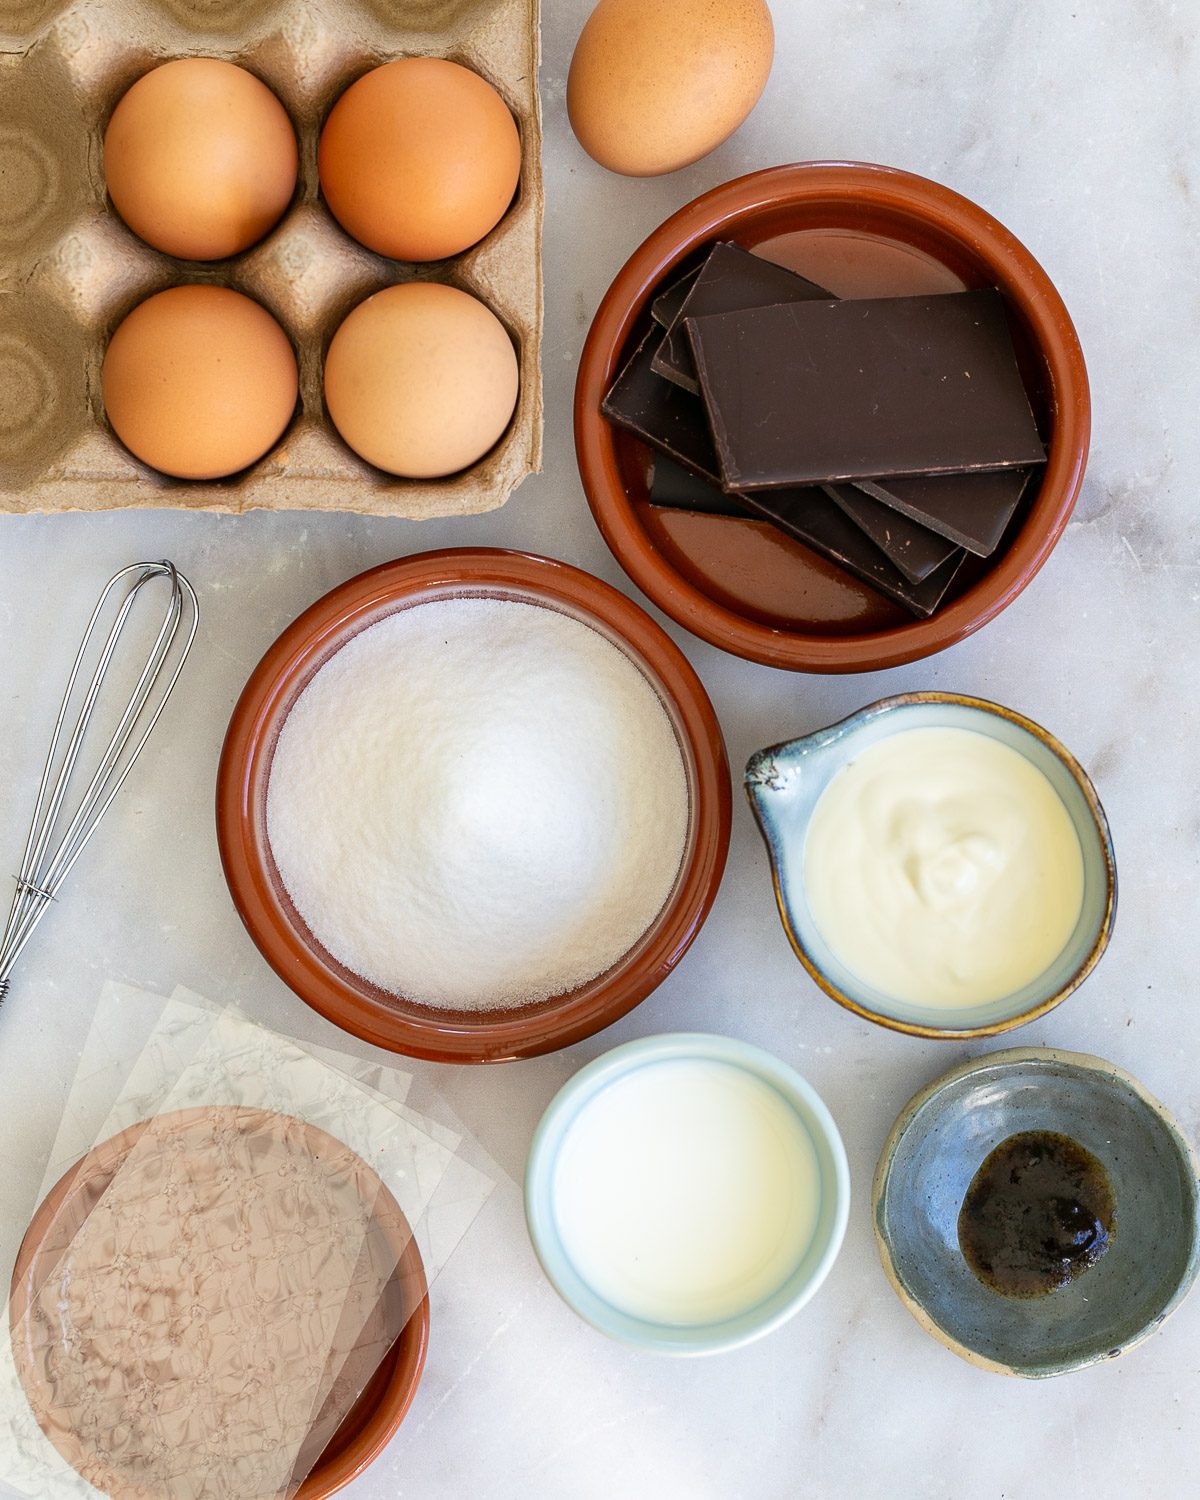 Ingredients to make Chocolate Bavarian Cream dessert